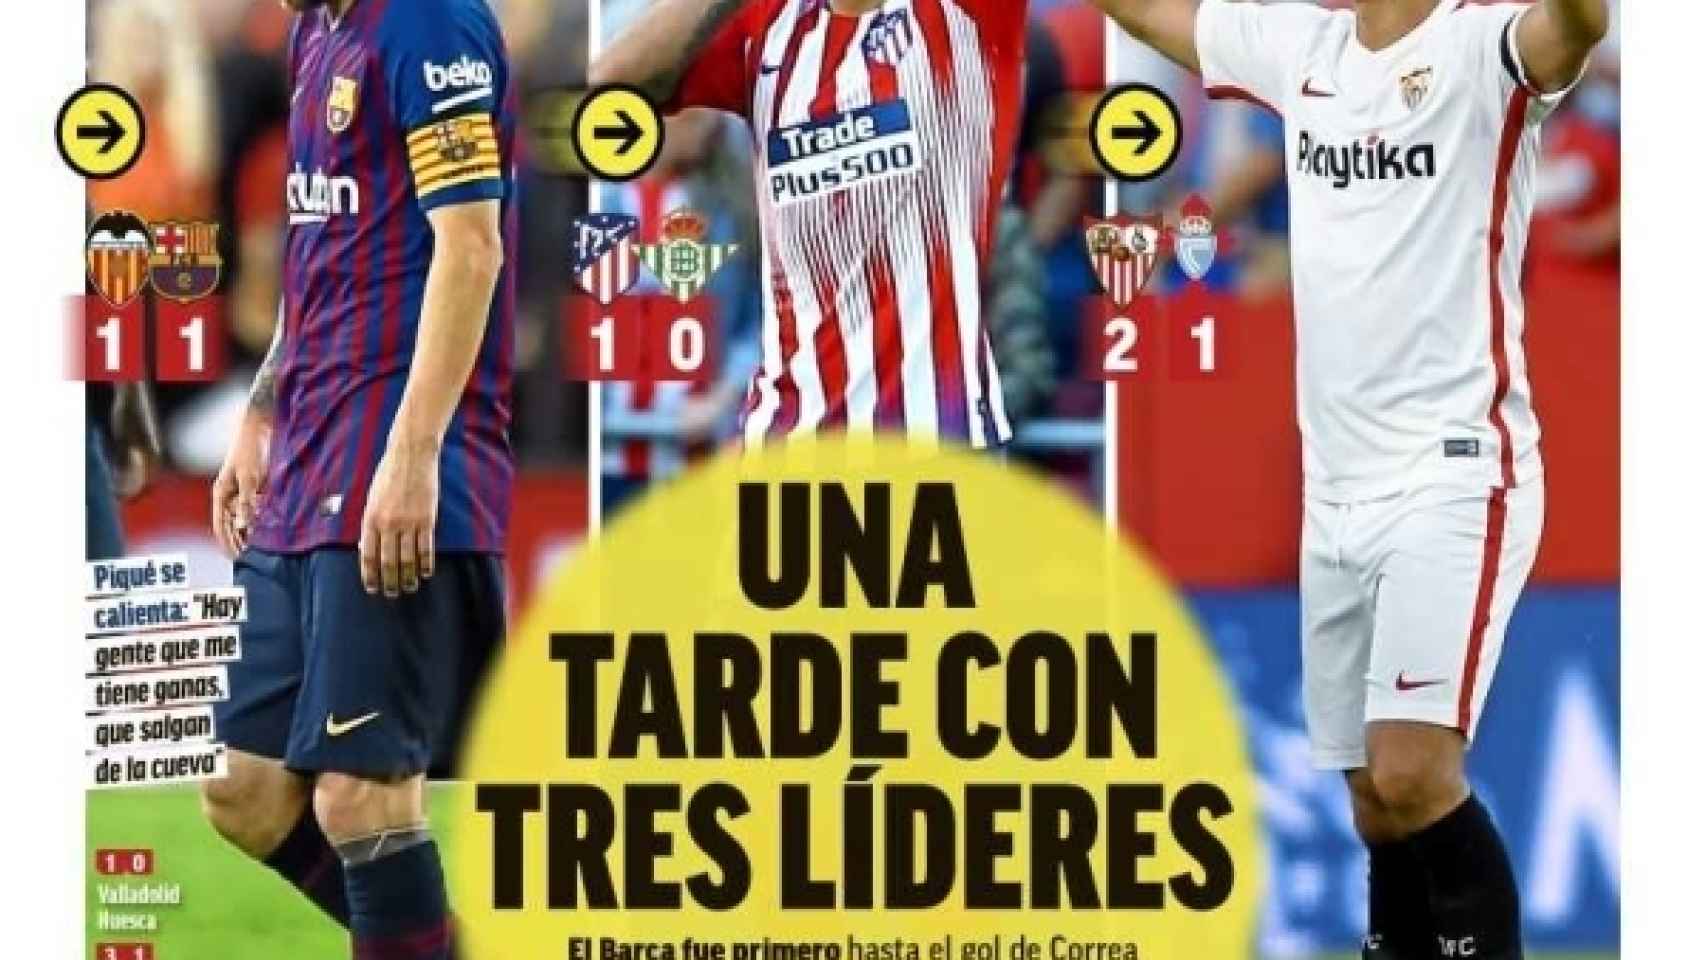 La portada del diario MARCA (08/10/2018)